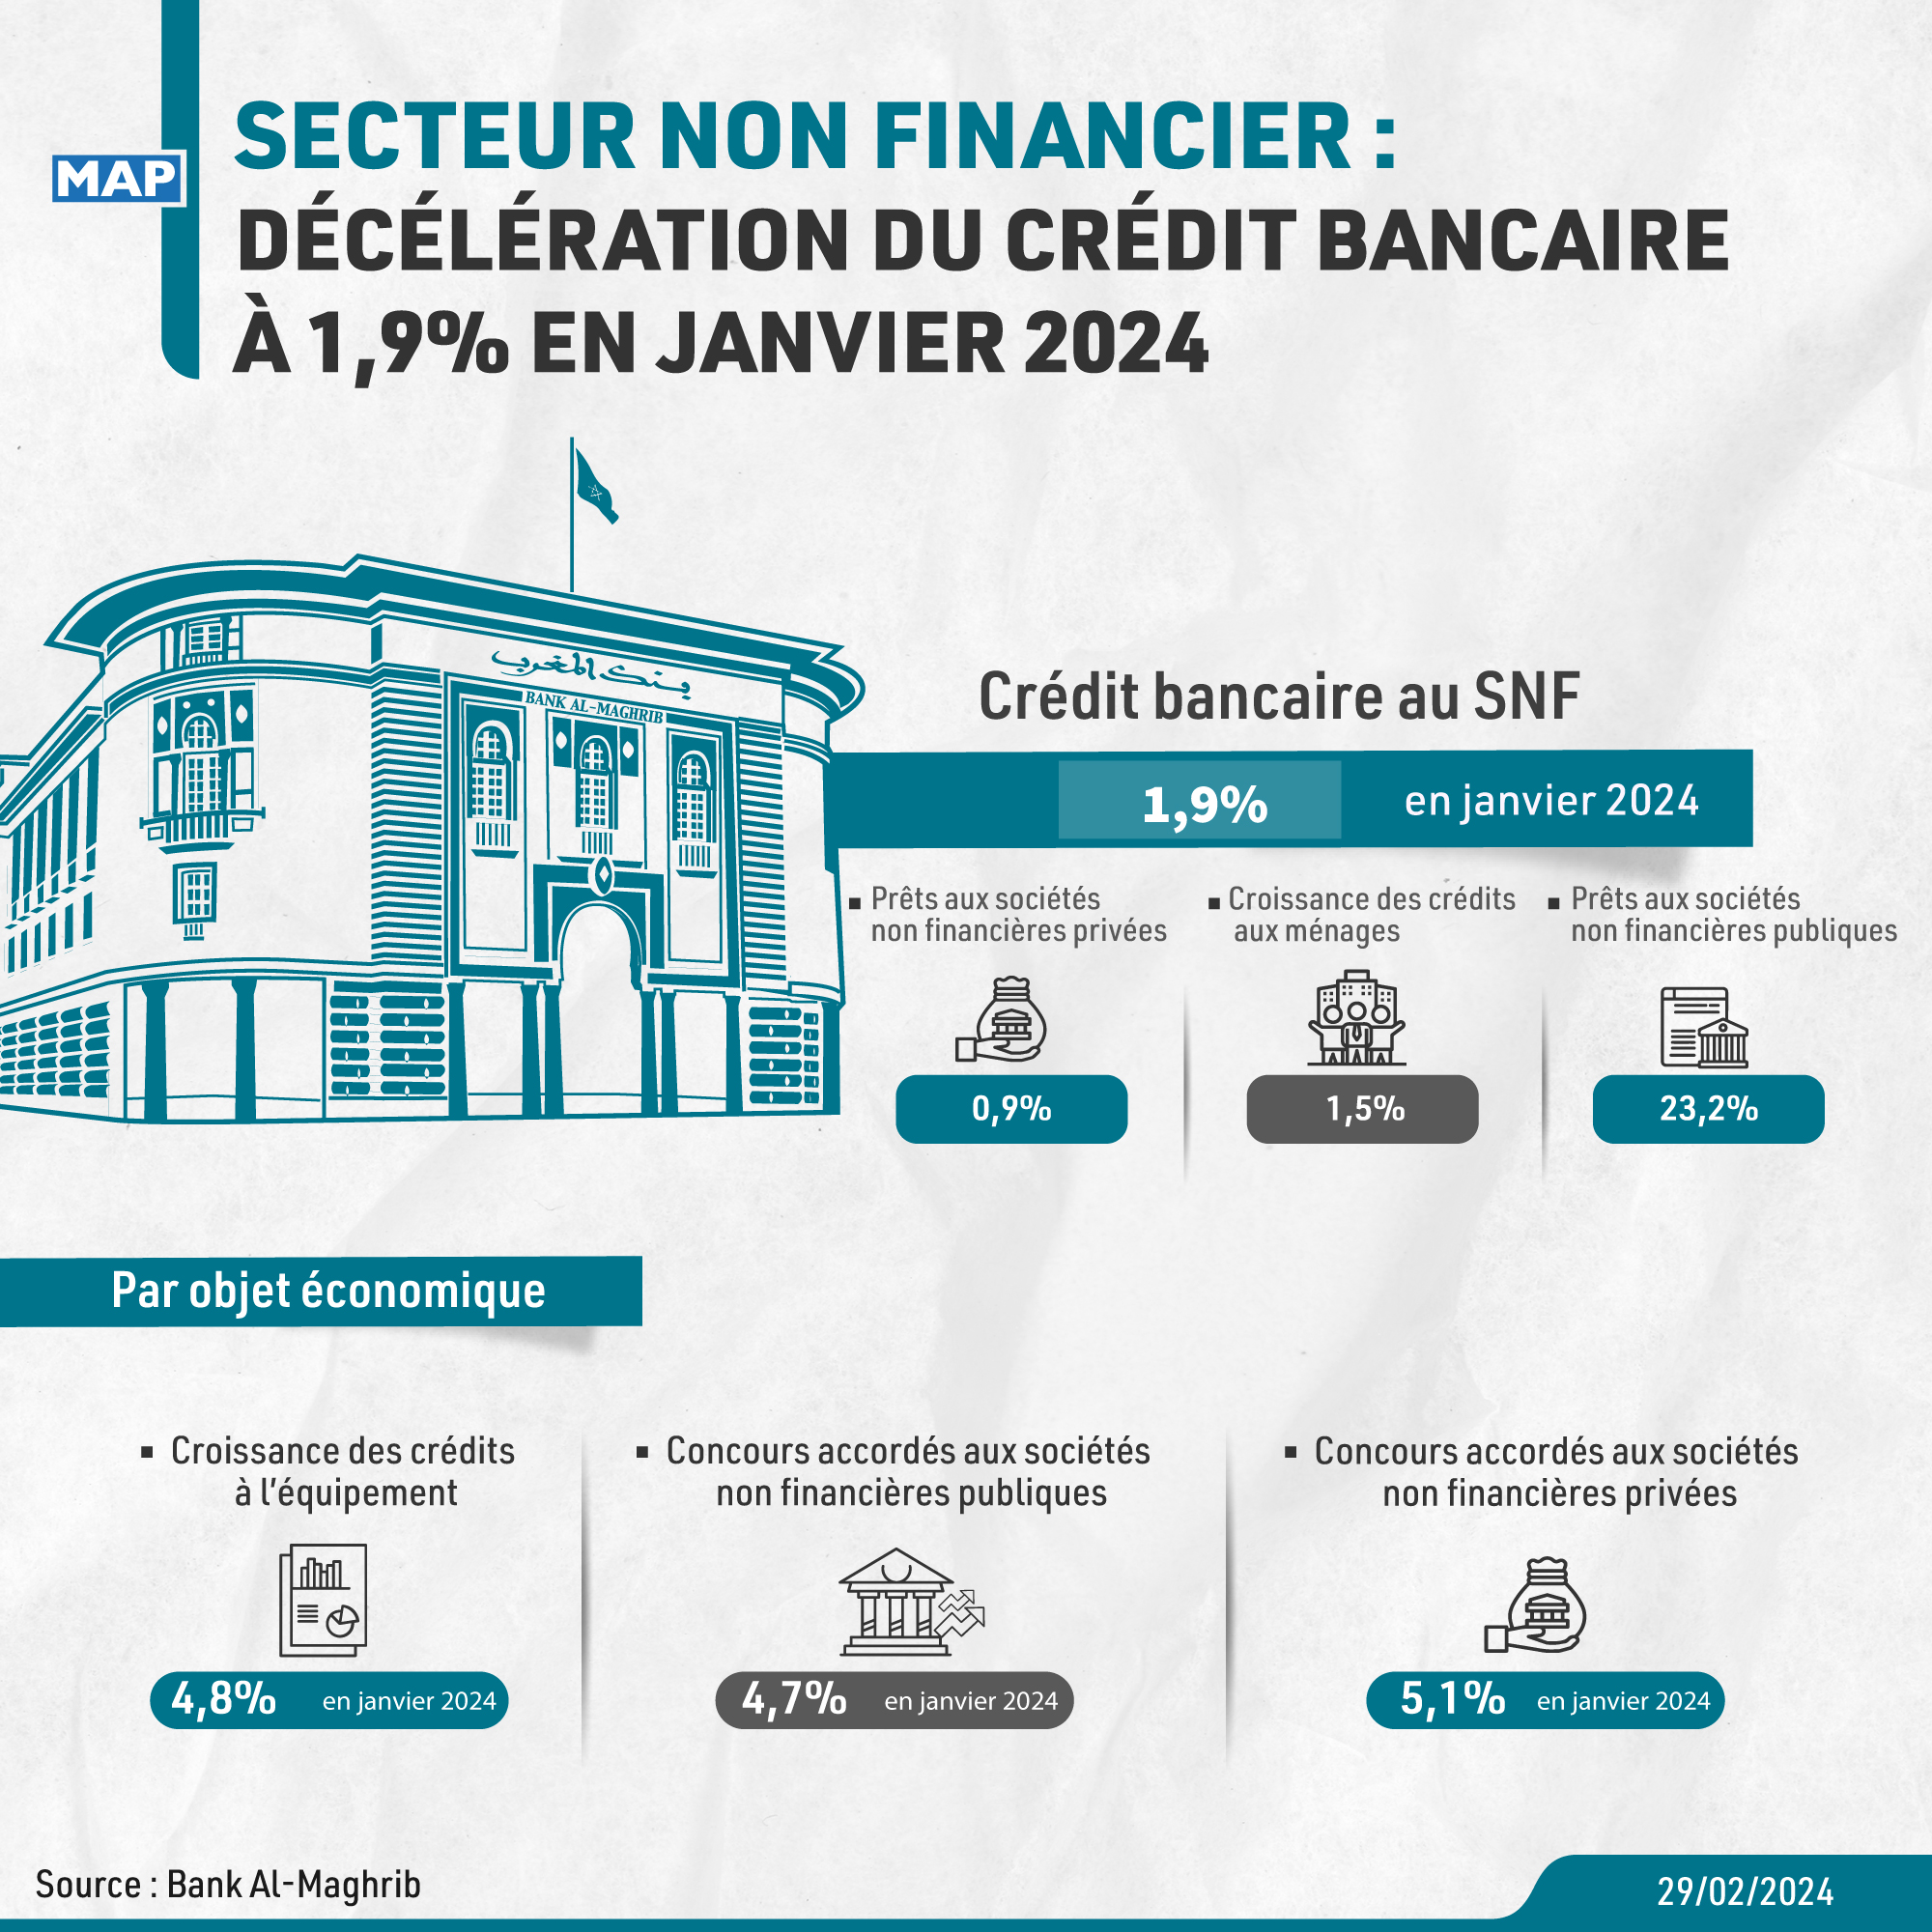 Secteur non financier : décélération du crédit bancaire à 1,9% en janvier 2024 (BAM)